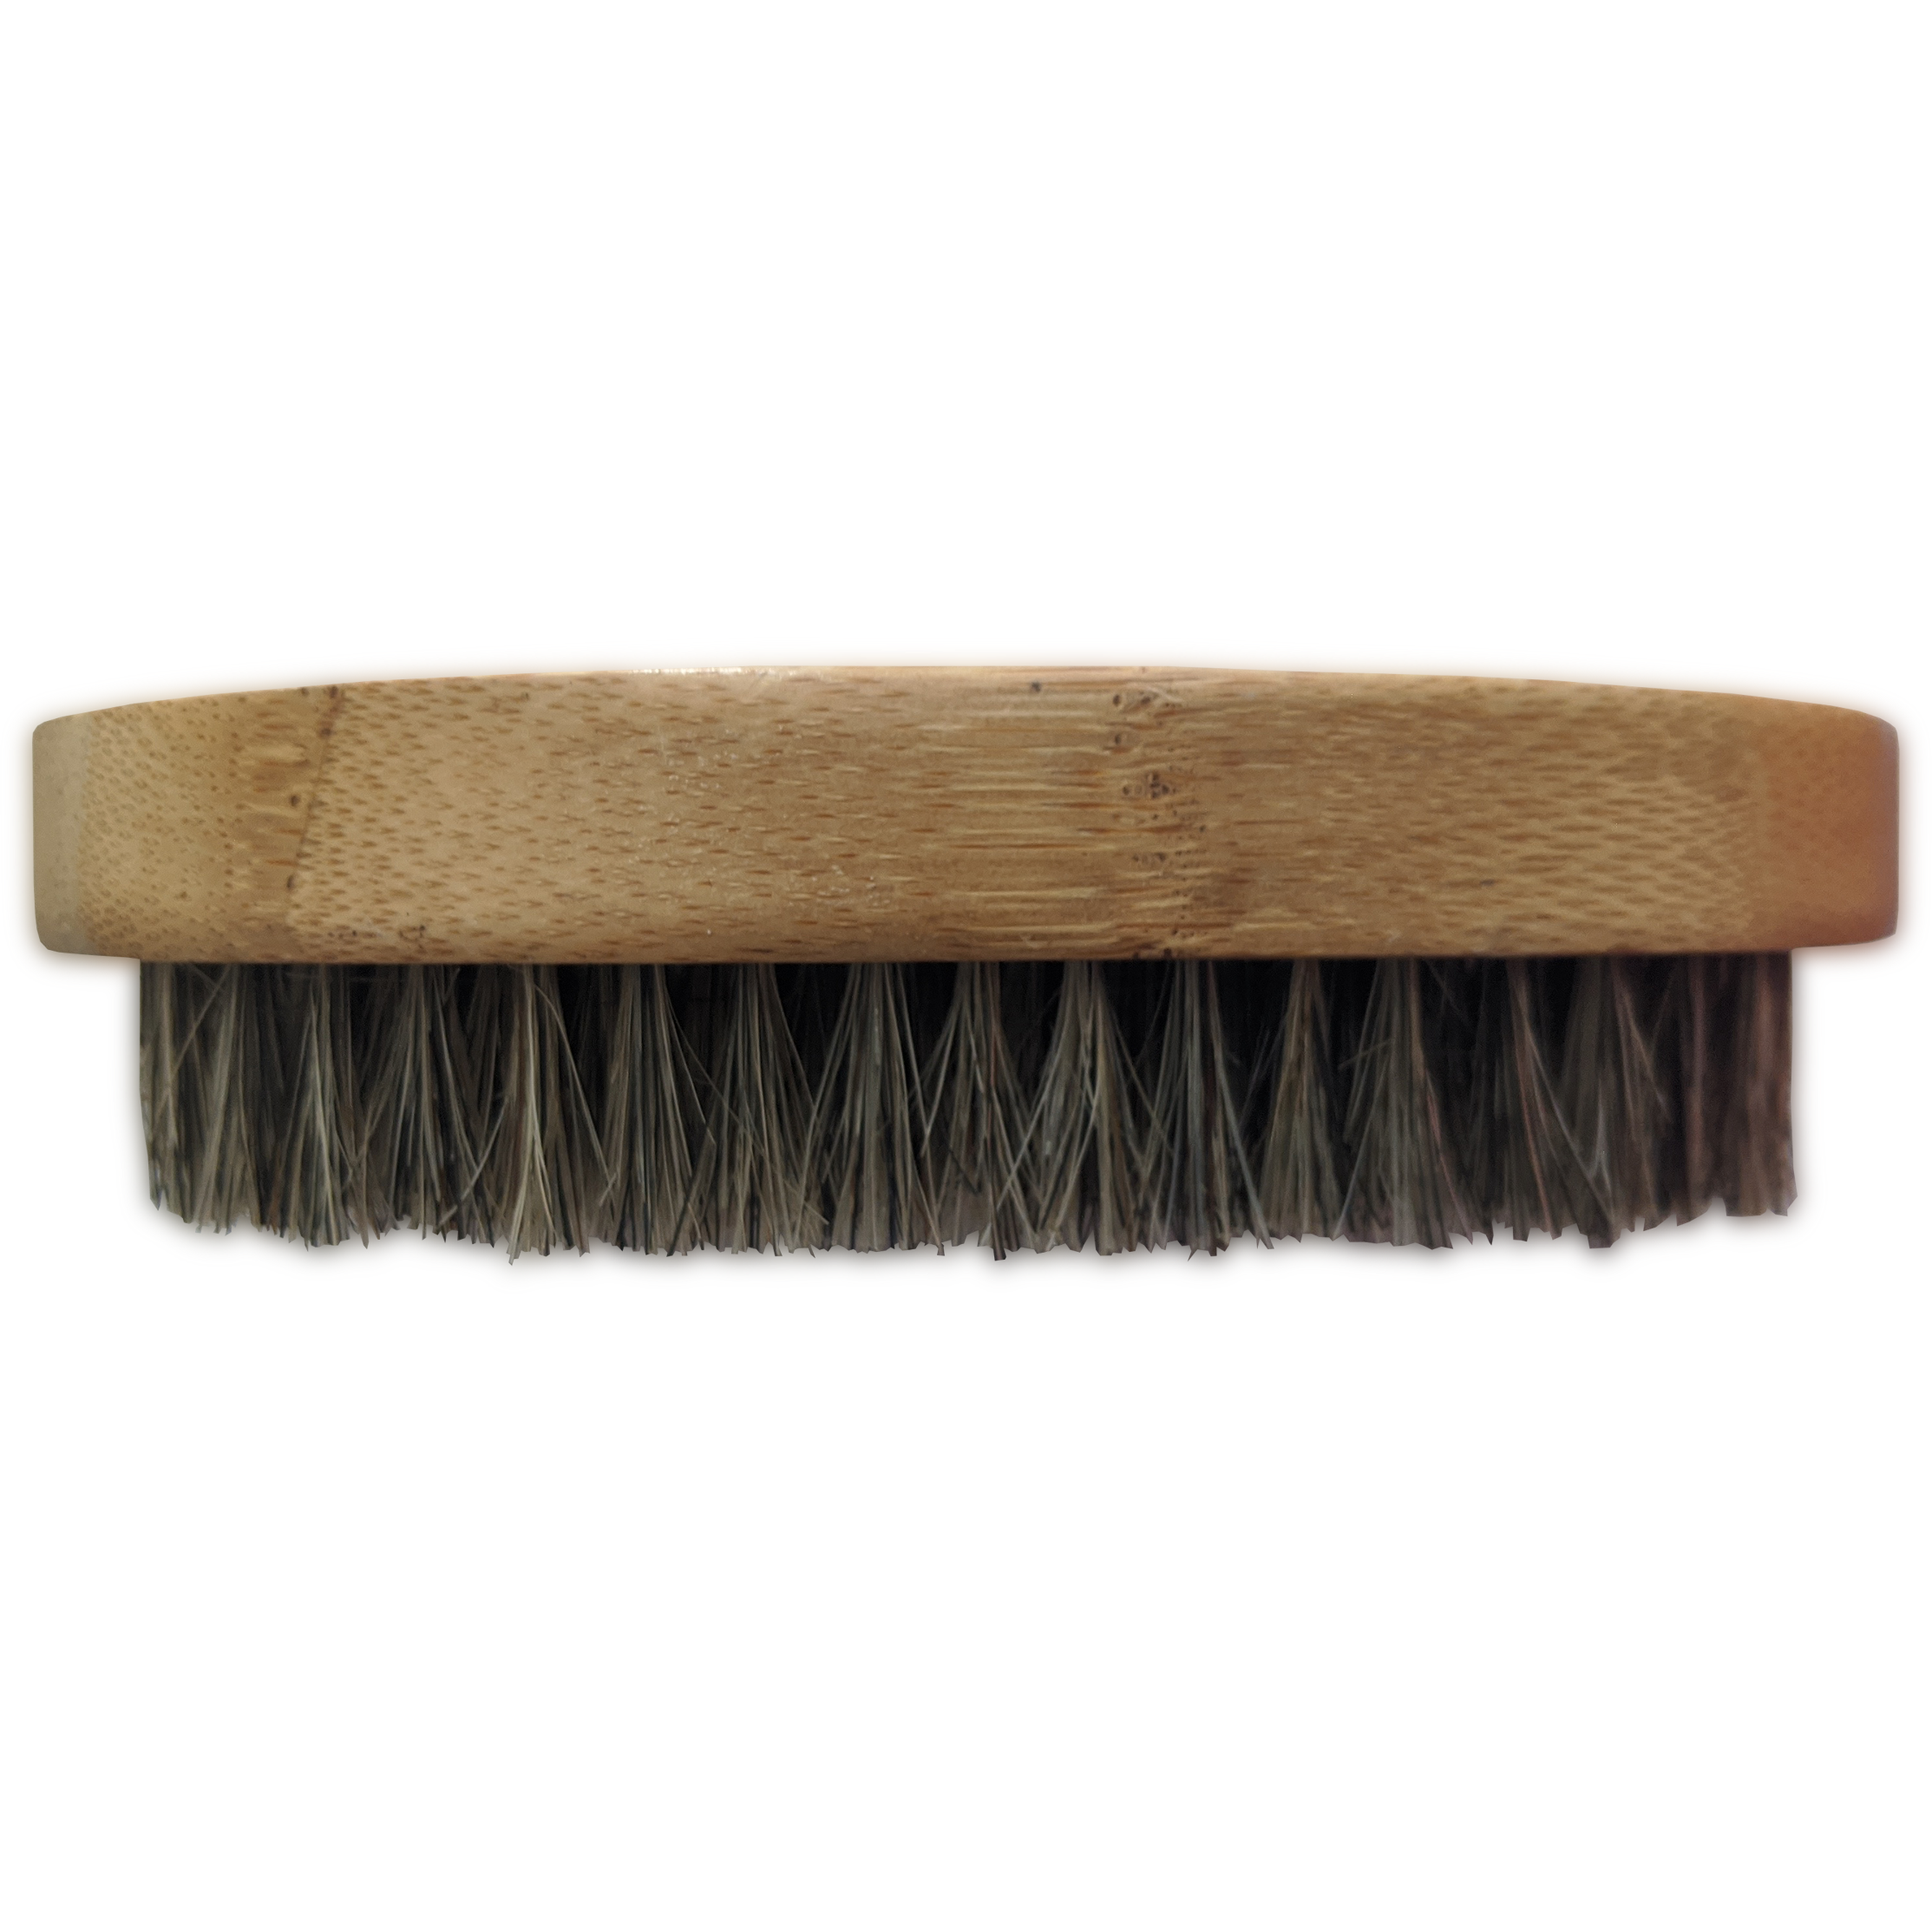 Kingly Beardz Boar hair beard brush